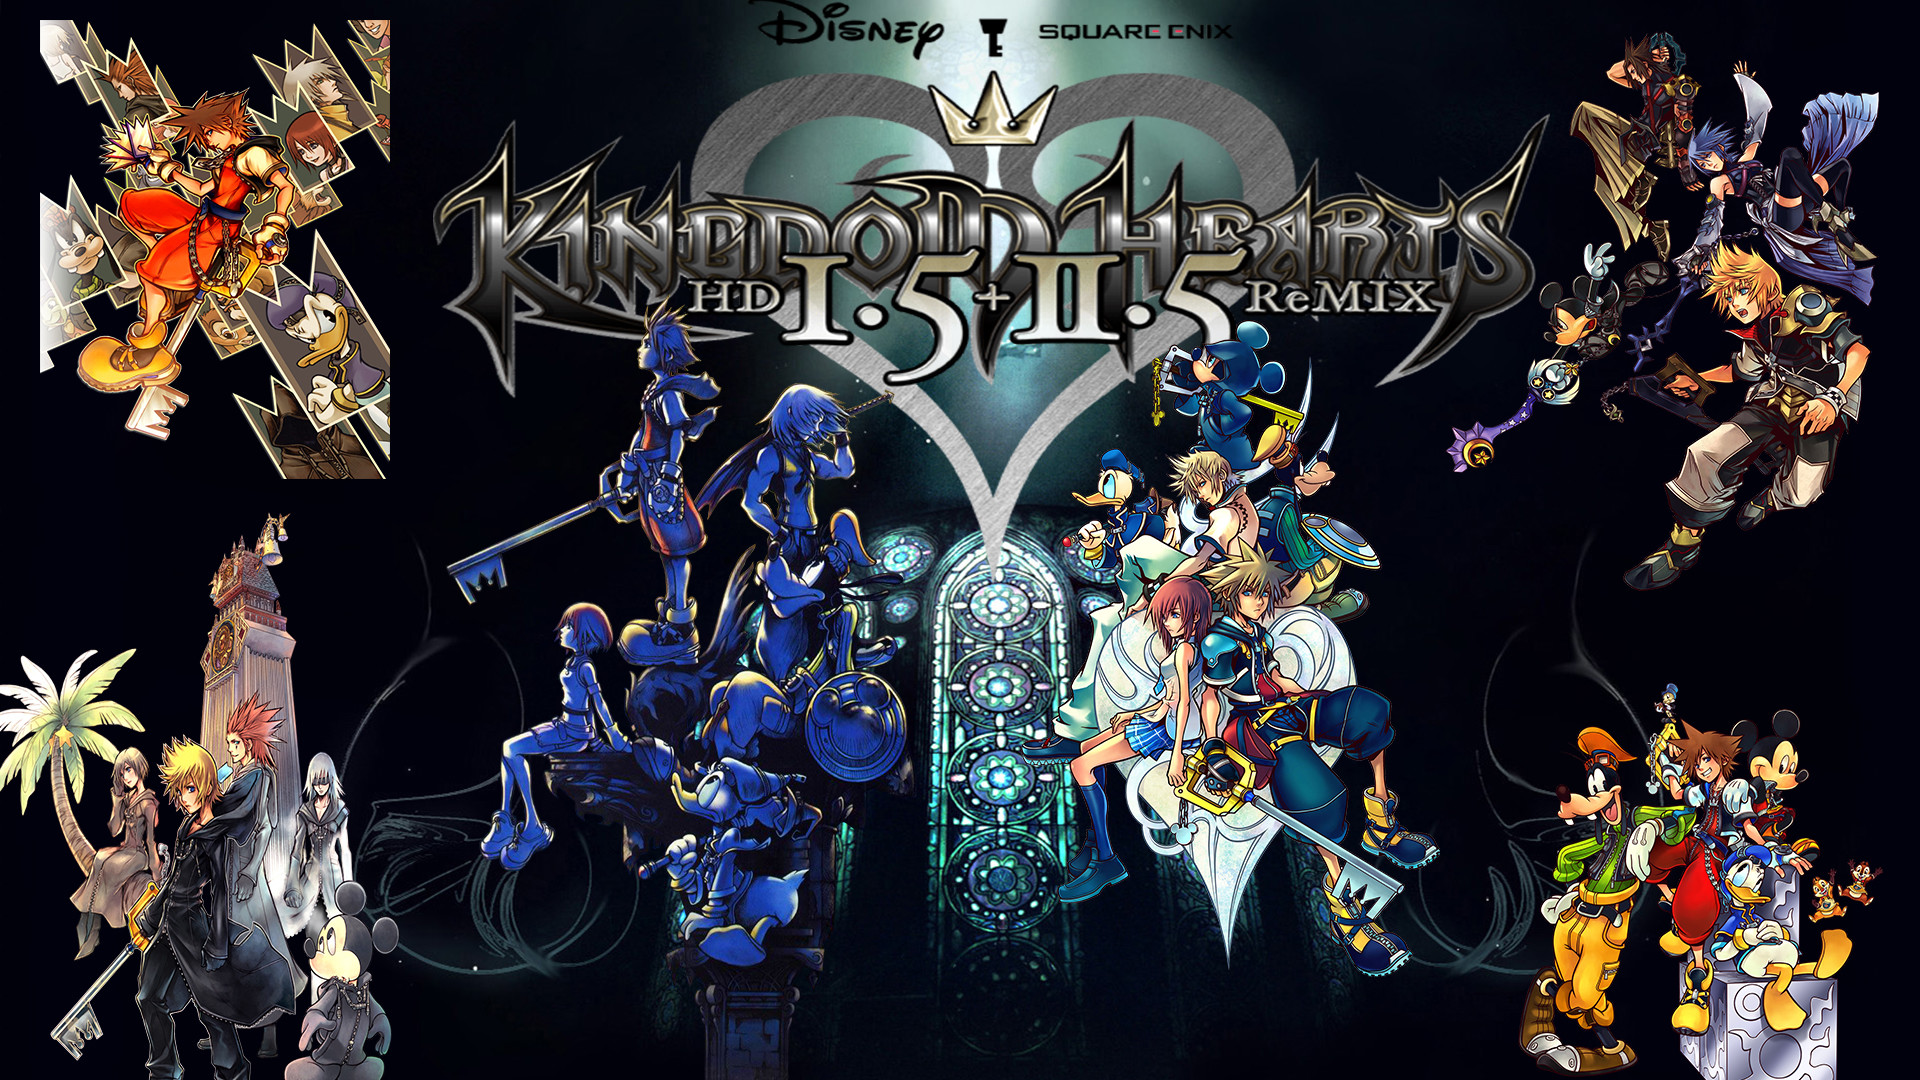 1920x1080 ... Kingdom Hearts 1.5 + 2.5 HD Remix Wallpaper by The-Dark-Mamba-995